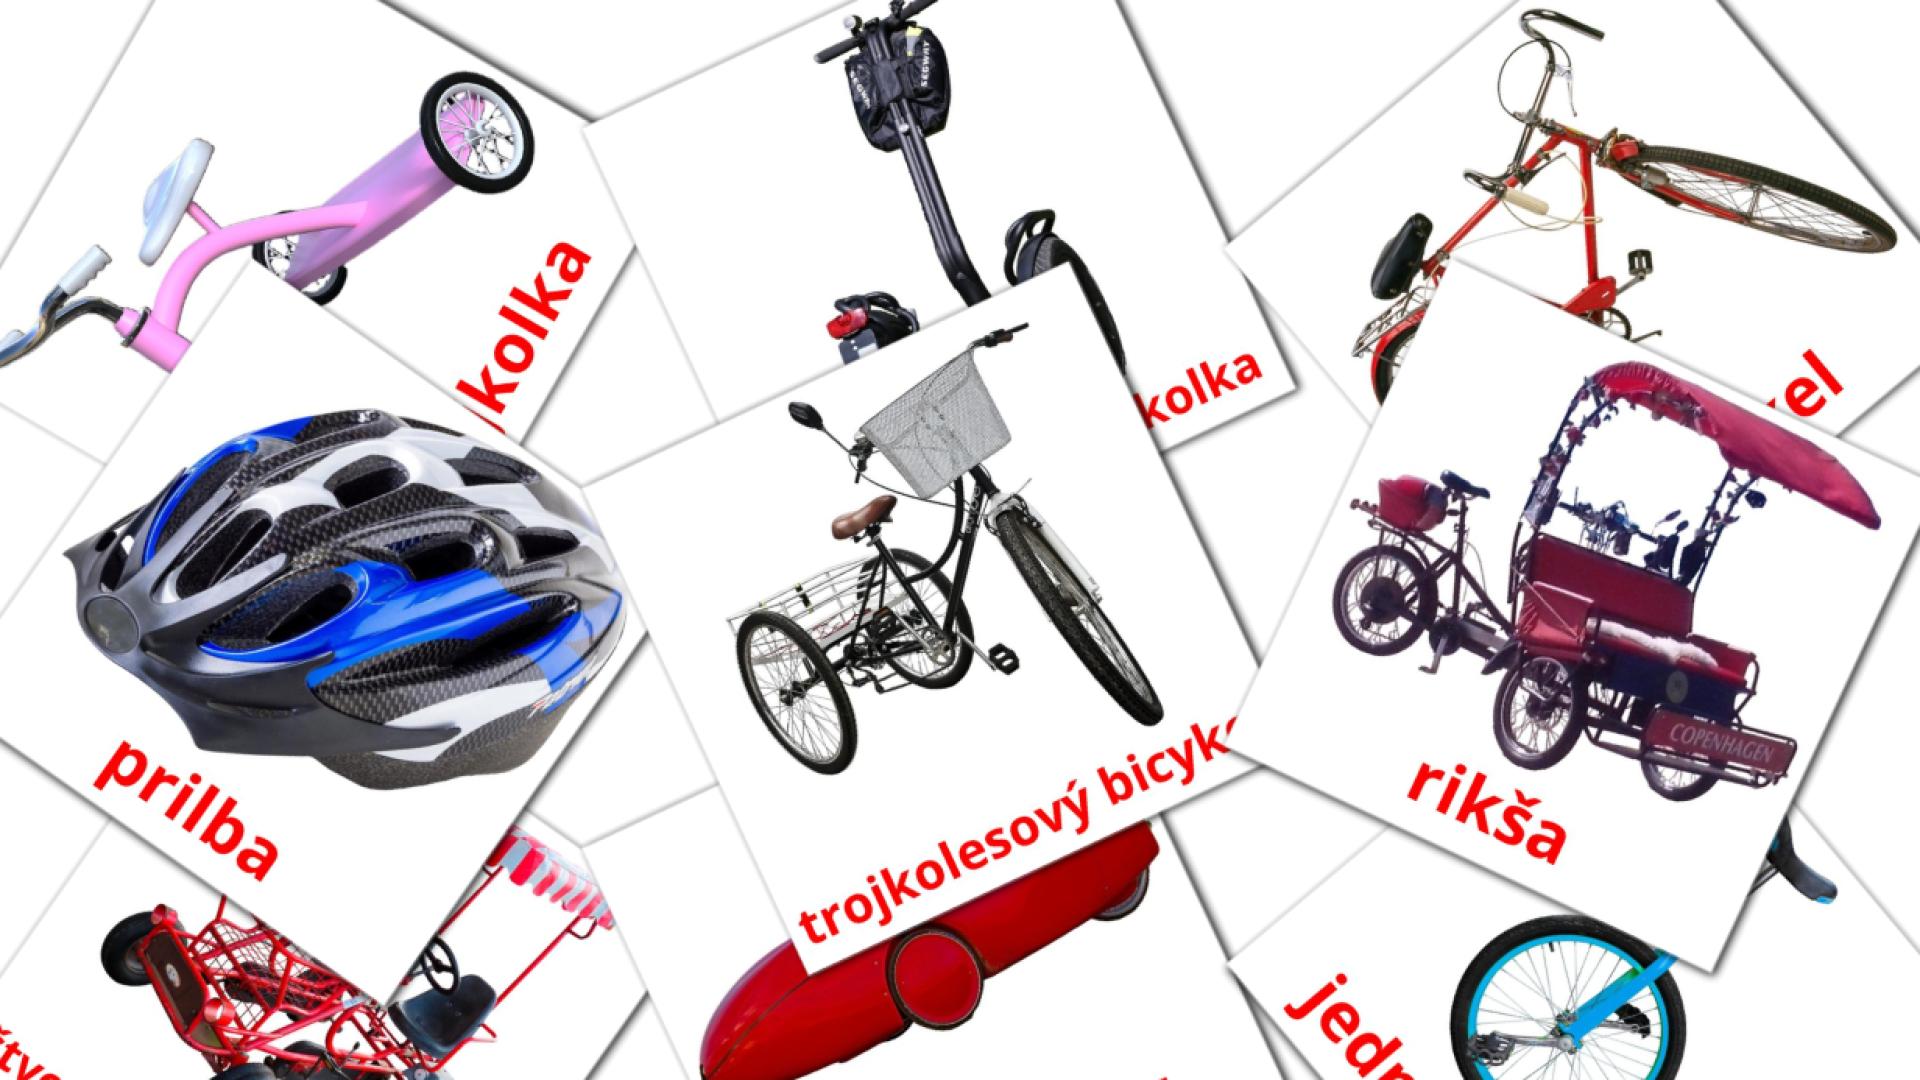 Bildkarten für bicykle